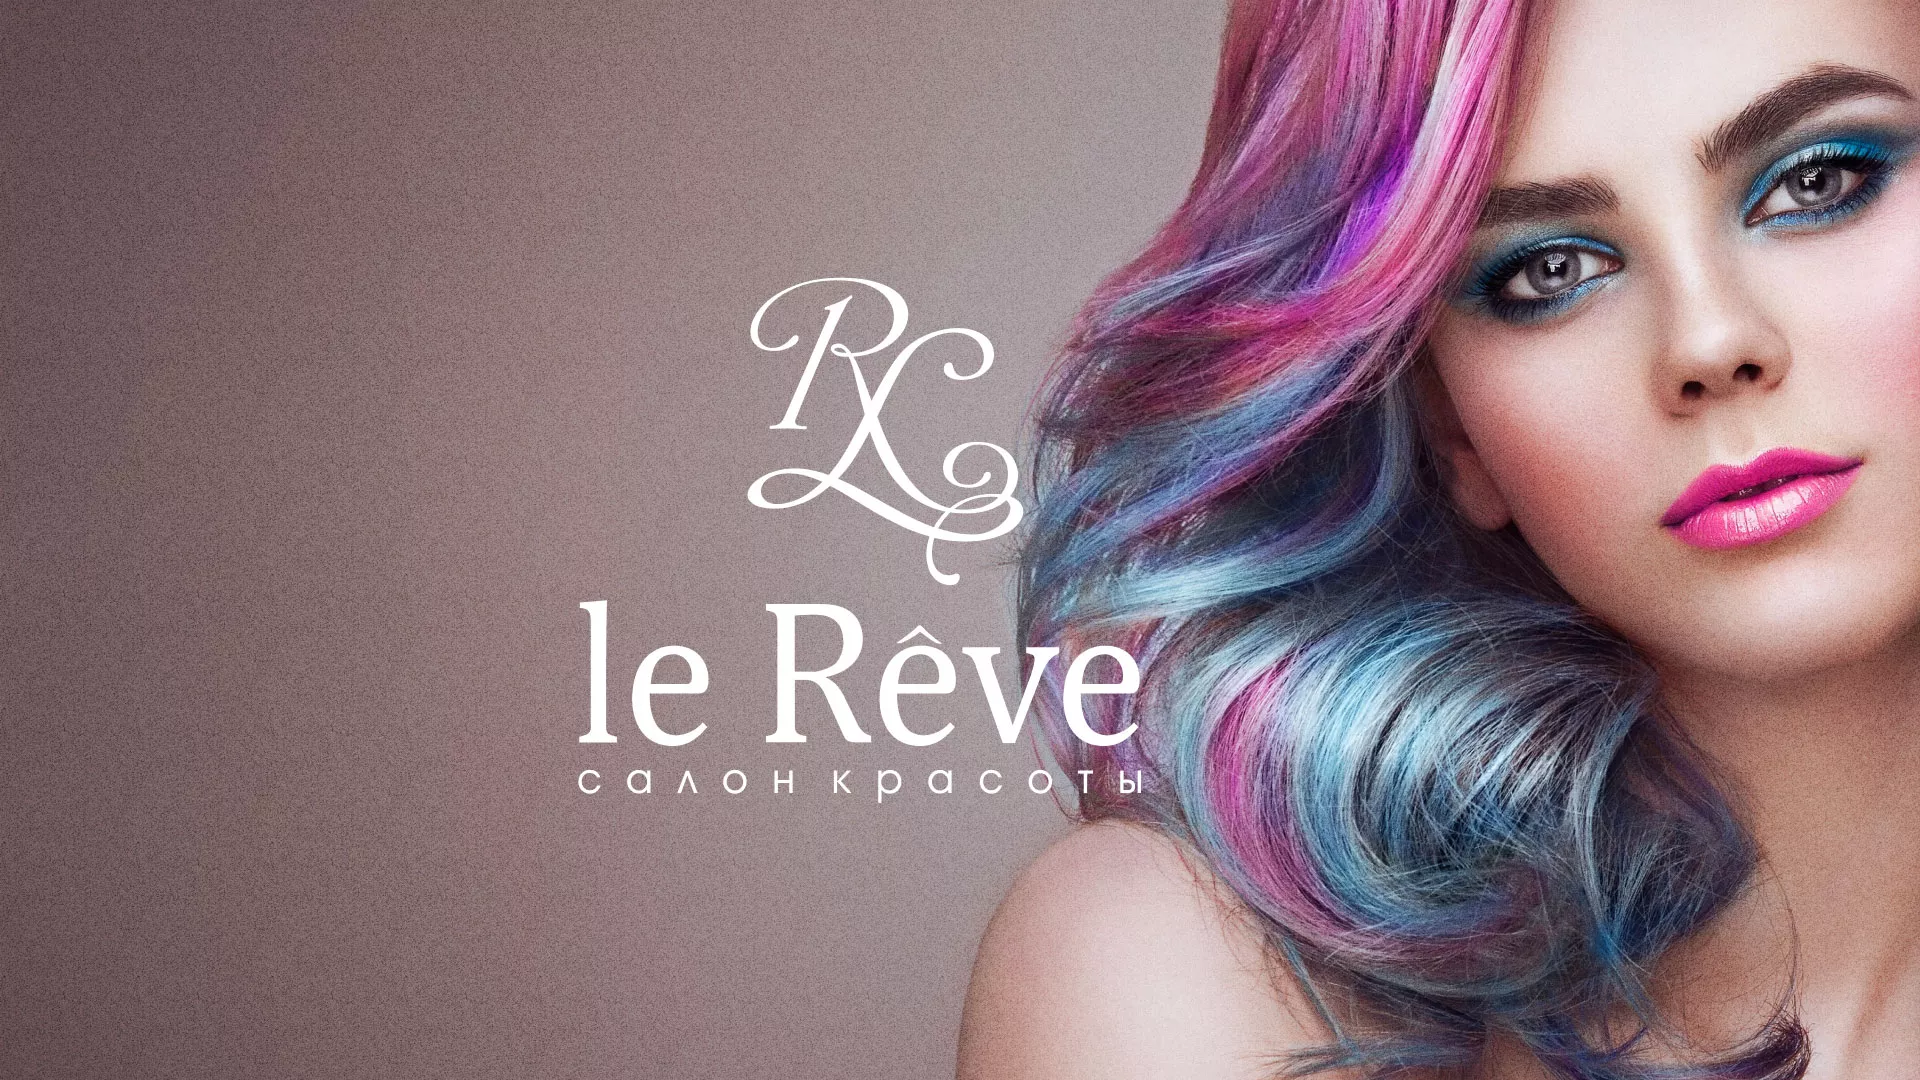 Создание сайта для салона красоты «Le Reve» в Чкаловском